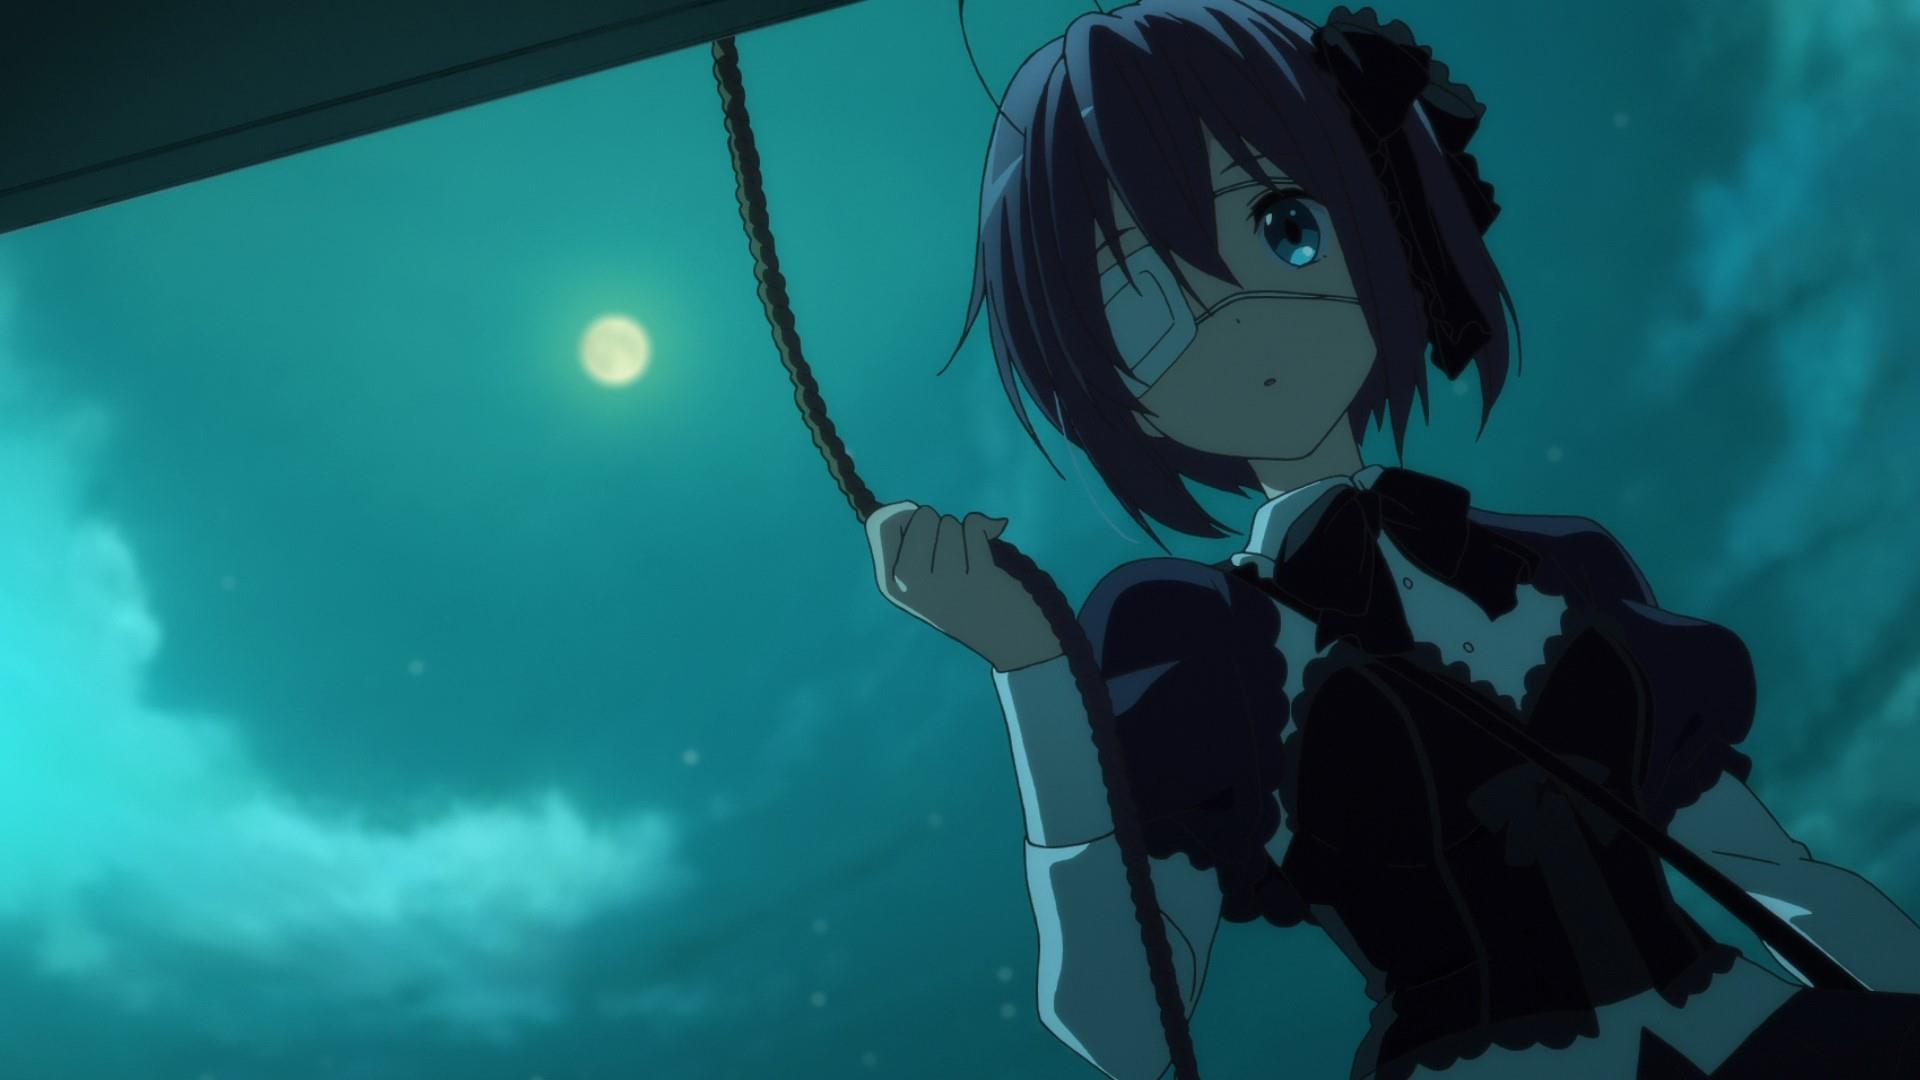 Anime Anime Girls Takanashi Rikka Chuunibyou Demo Koi Ga Shitai Anime Screenshot Moon Sky Night Eyep 1920x1080